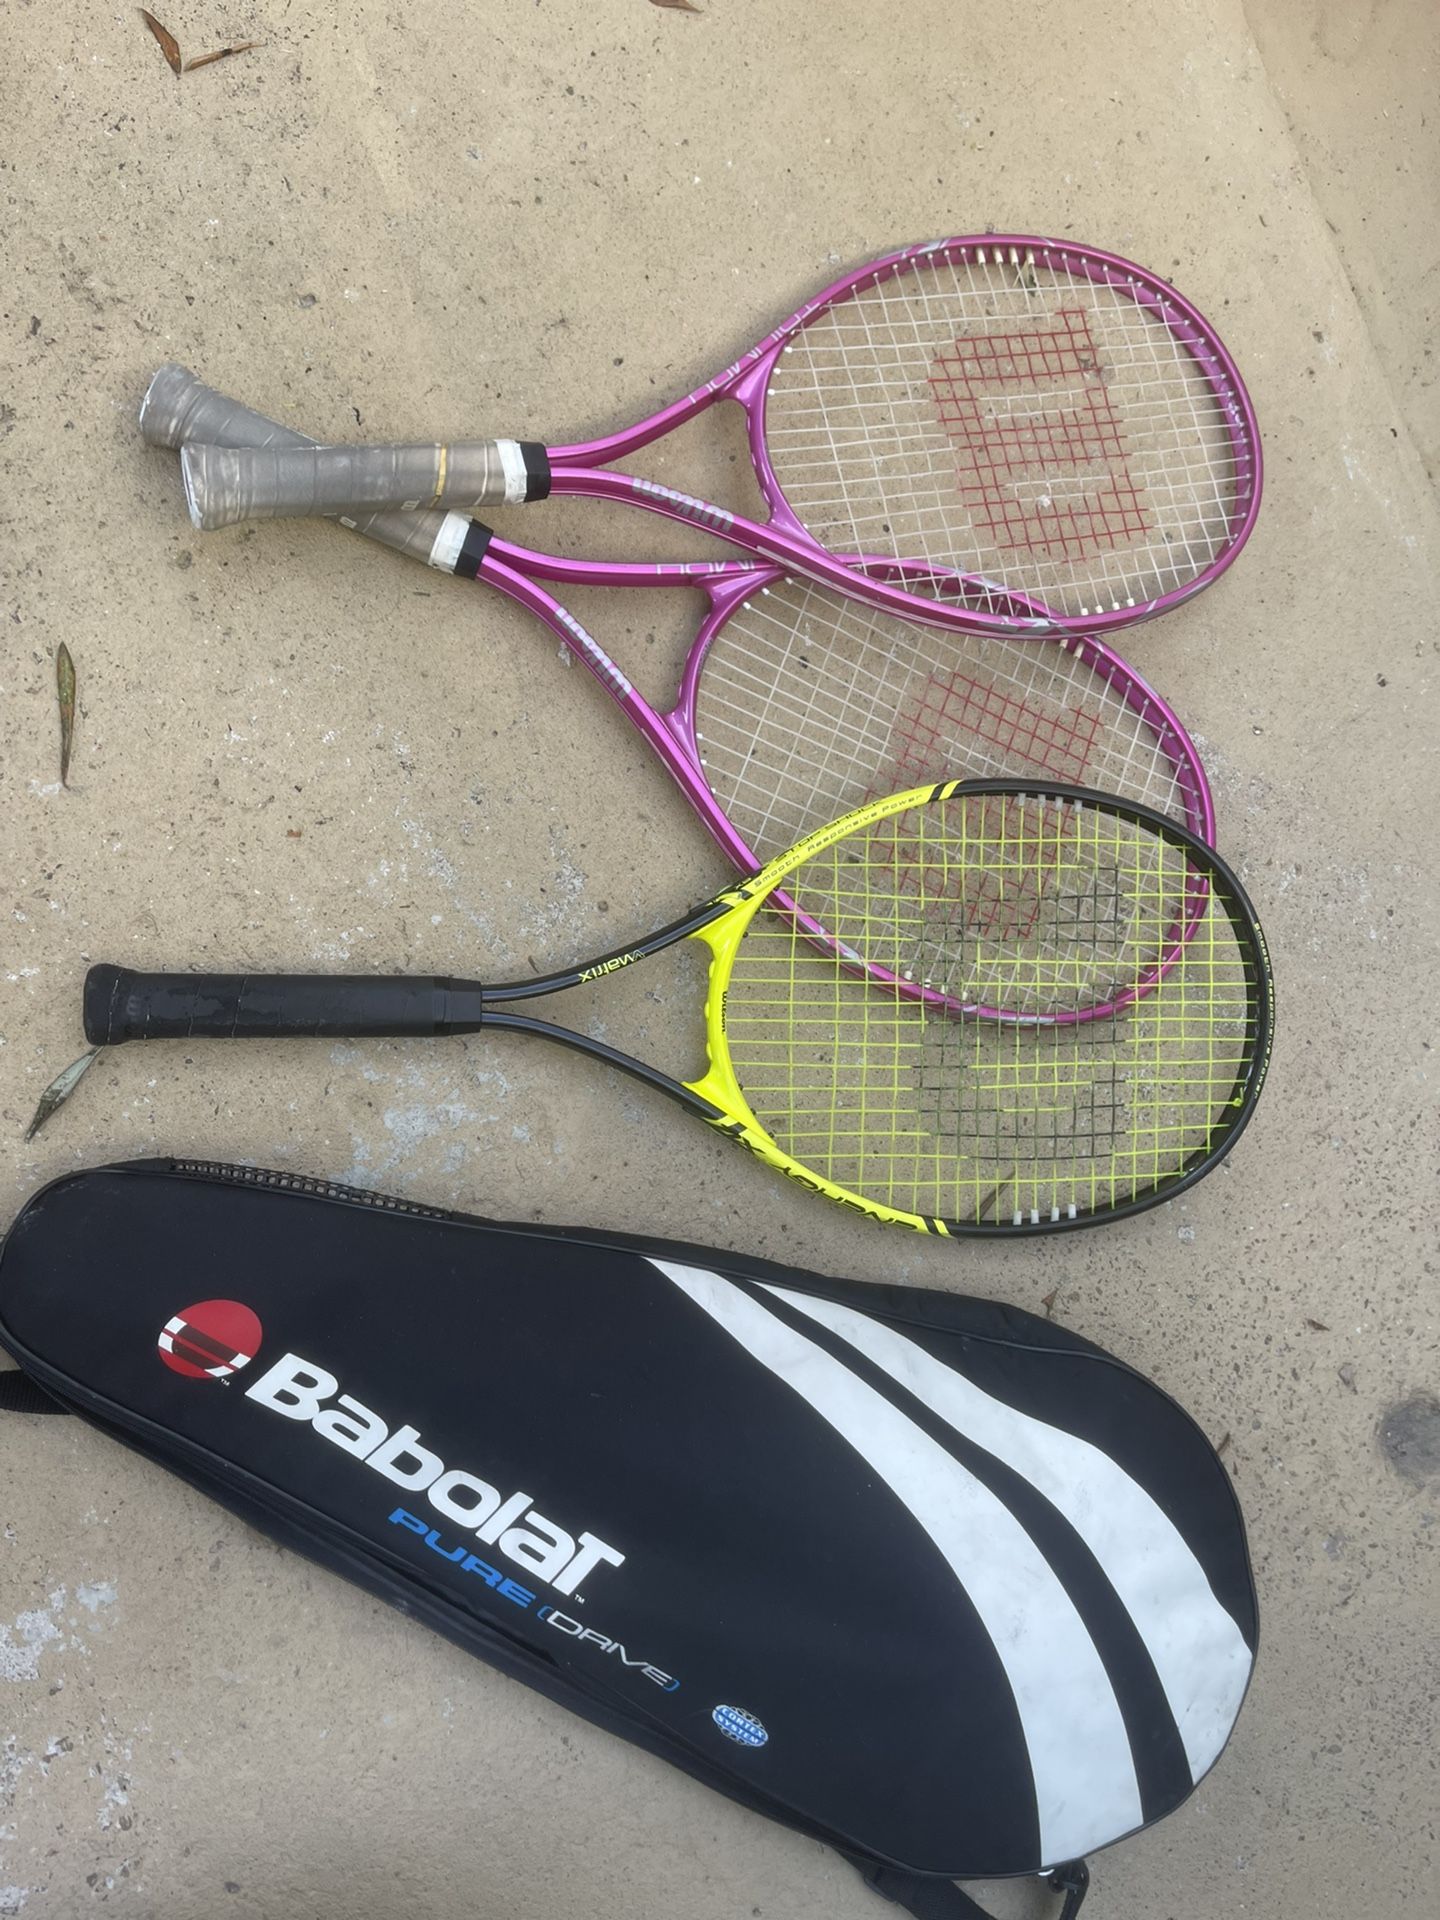 3 Wilson Tennis Rackets